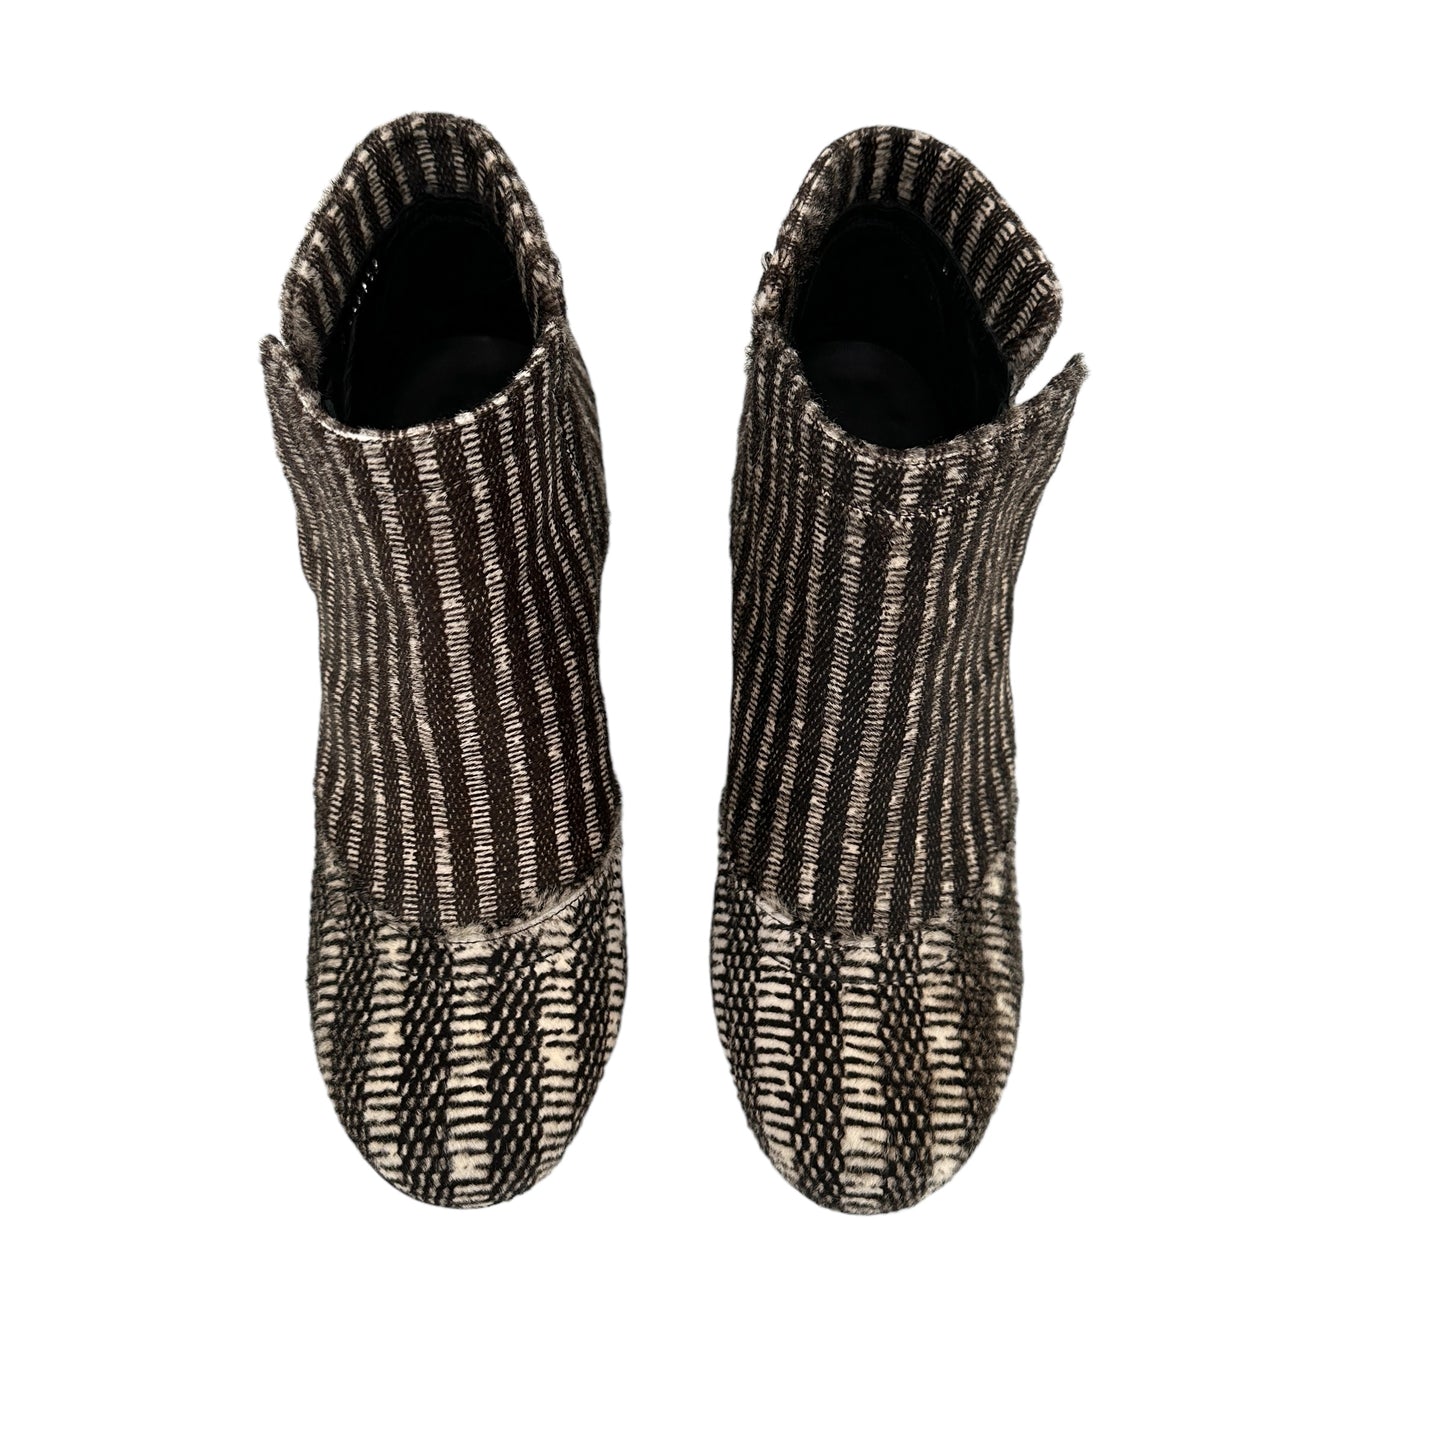 Tweed Heeled Boots - 9